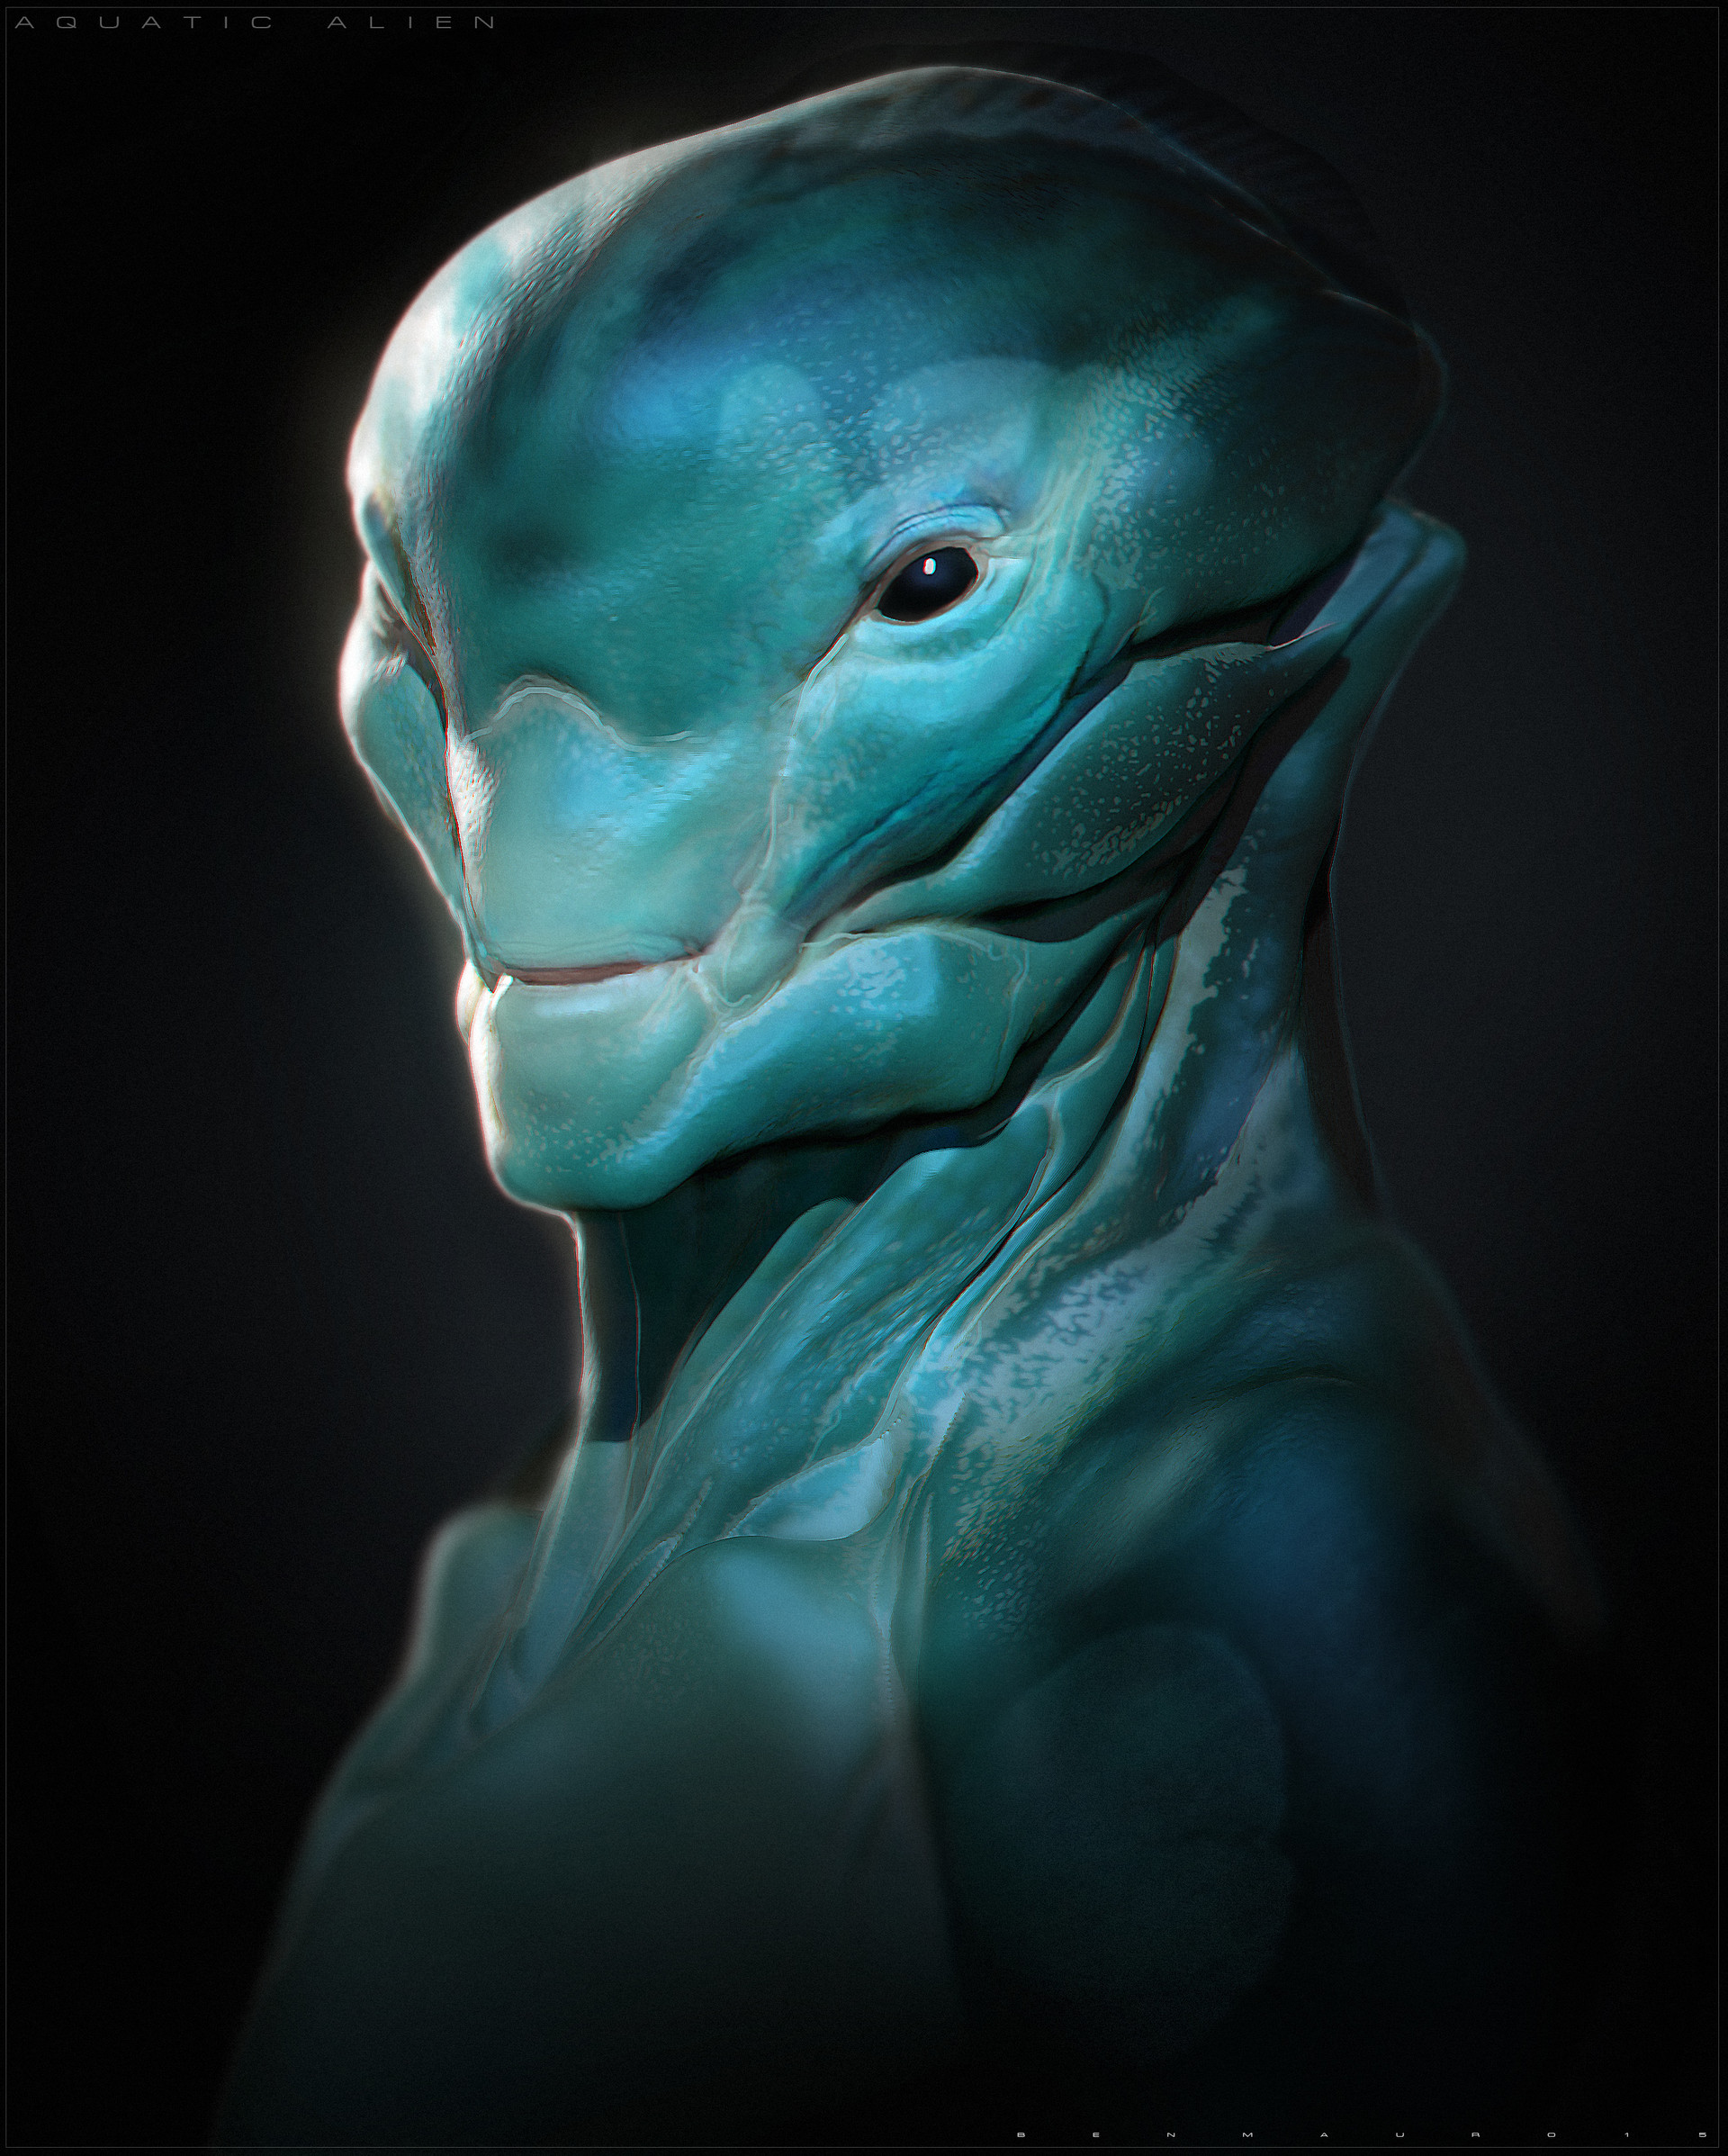 ben-mauro-aquatic-alien-01b-bm.jpg